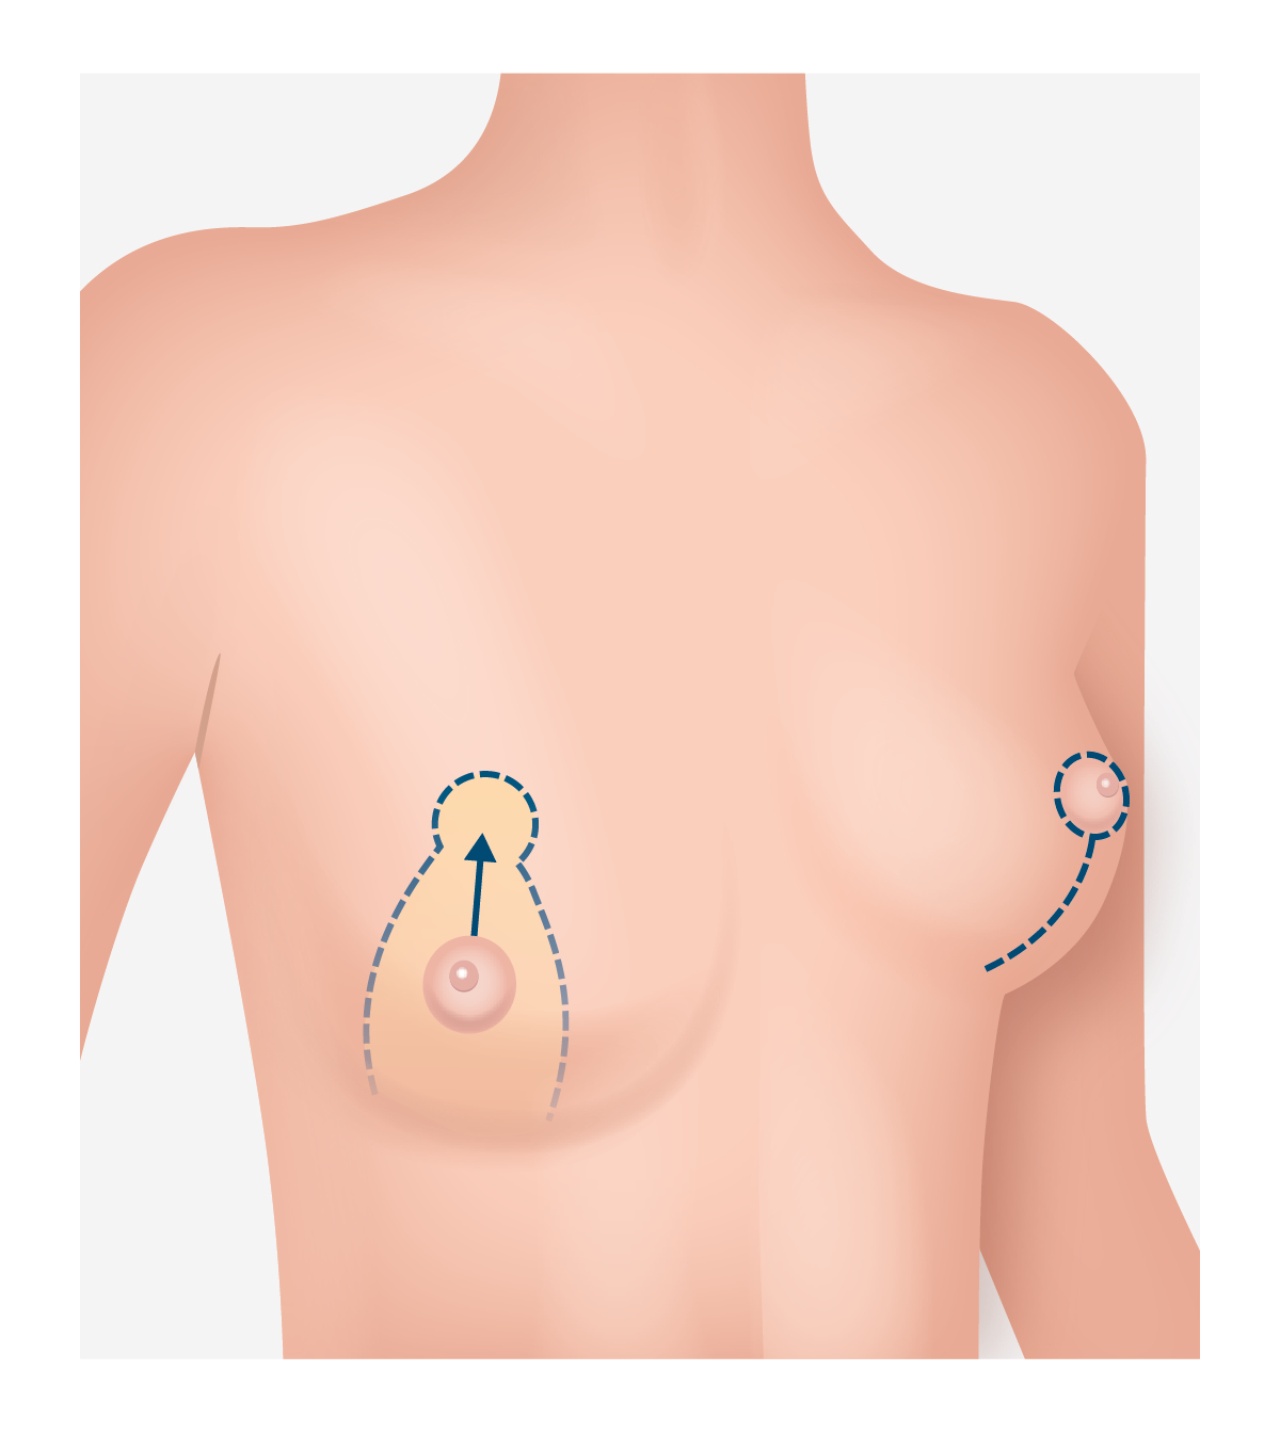 Illustration einer Brustwarzen Operation